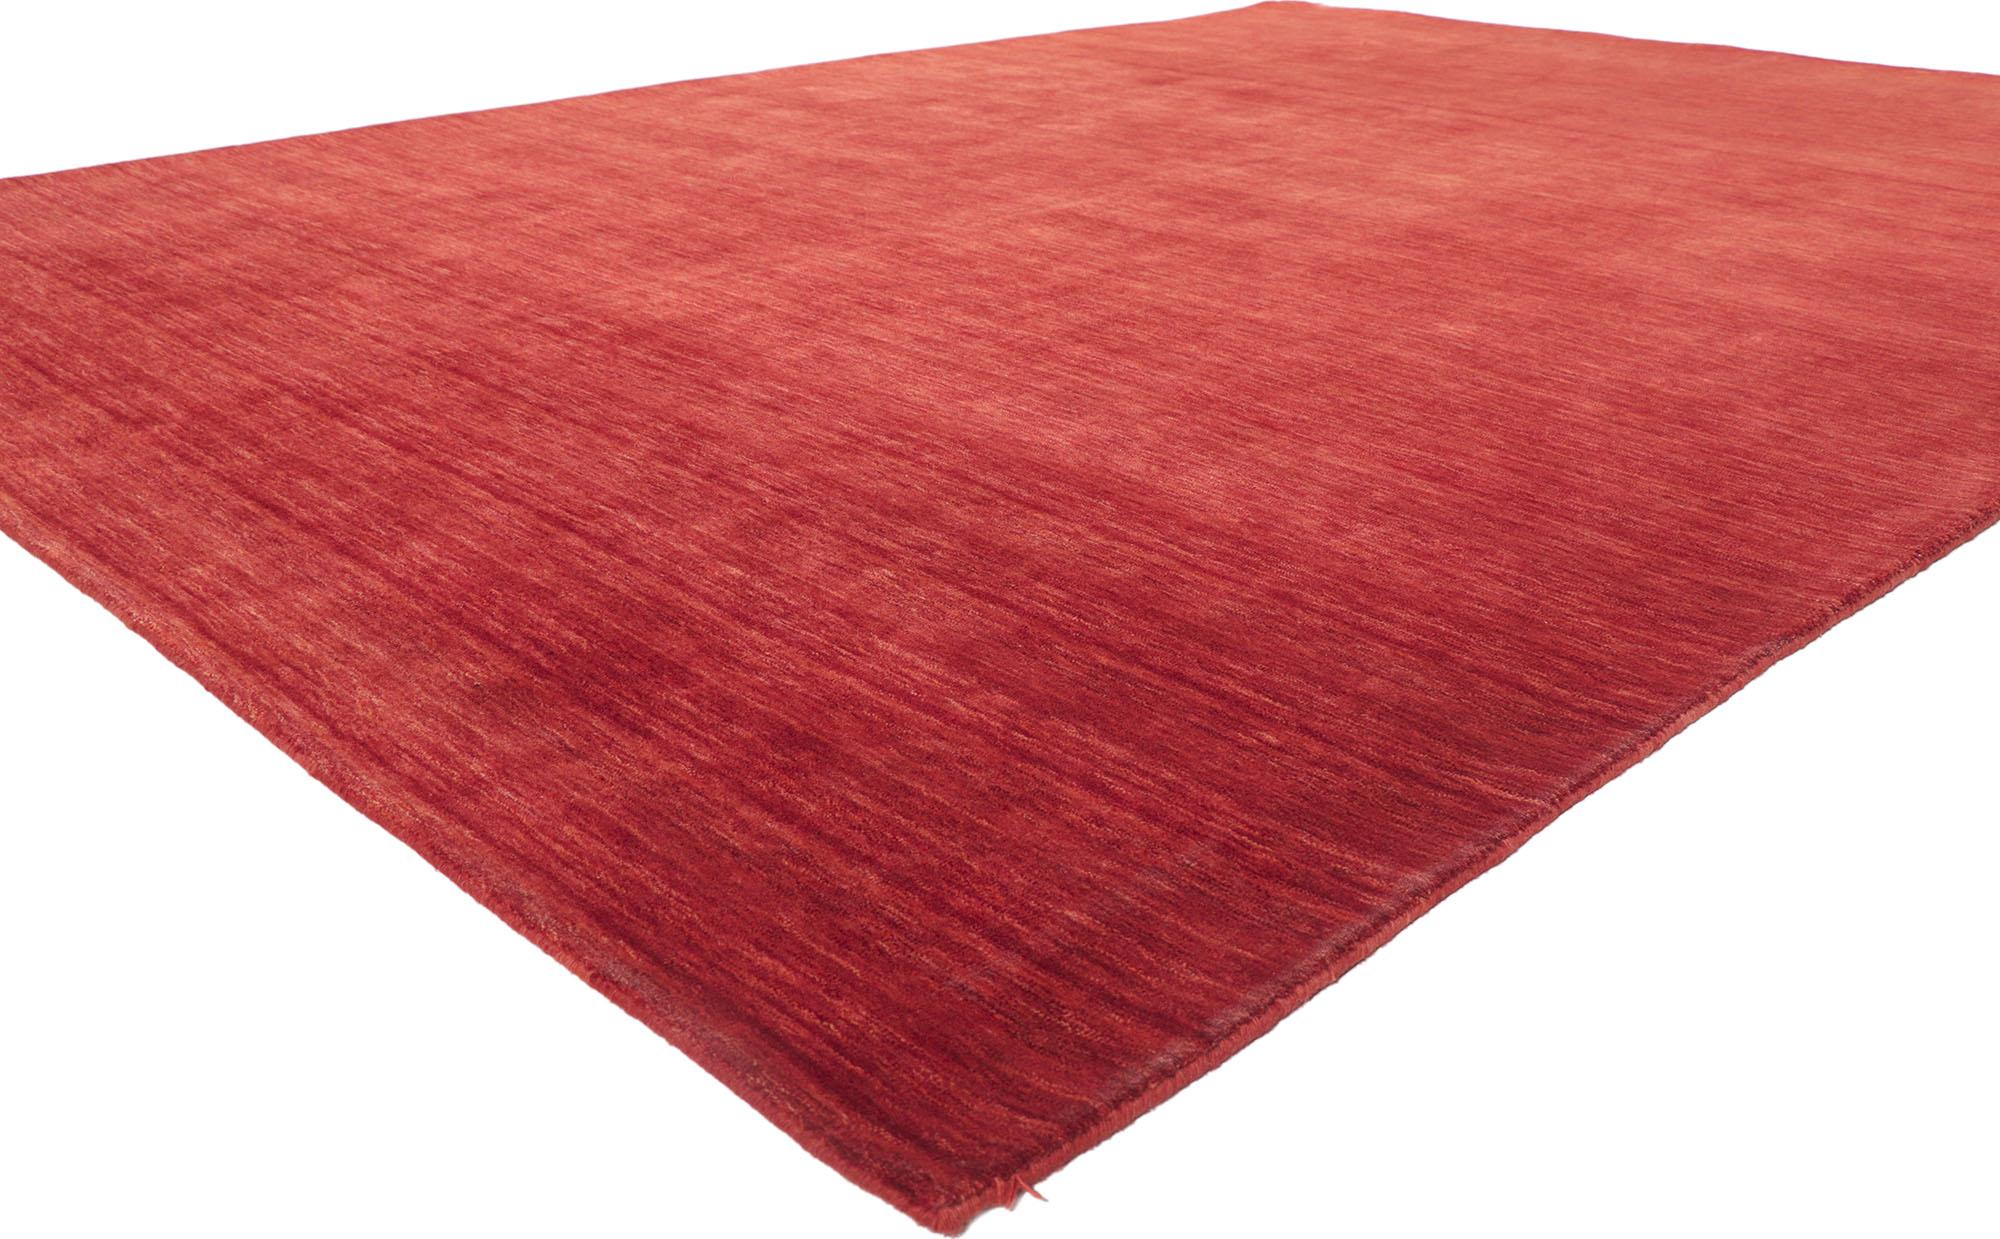 30733 New Contemporary Red Area rug with Modern Style 08'09 x 12'00. Ce tapis indien contemporain est à la fois simple, élégant et décontracté. Il présente de superbes teintes rouges et des stries doucement dégradées d'une lisière à l'autre, qui se